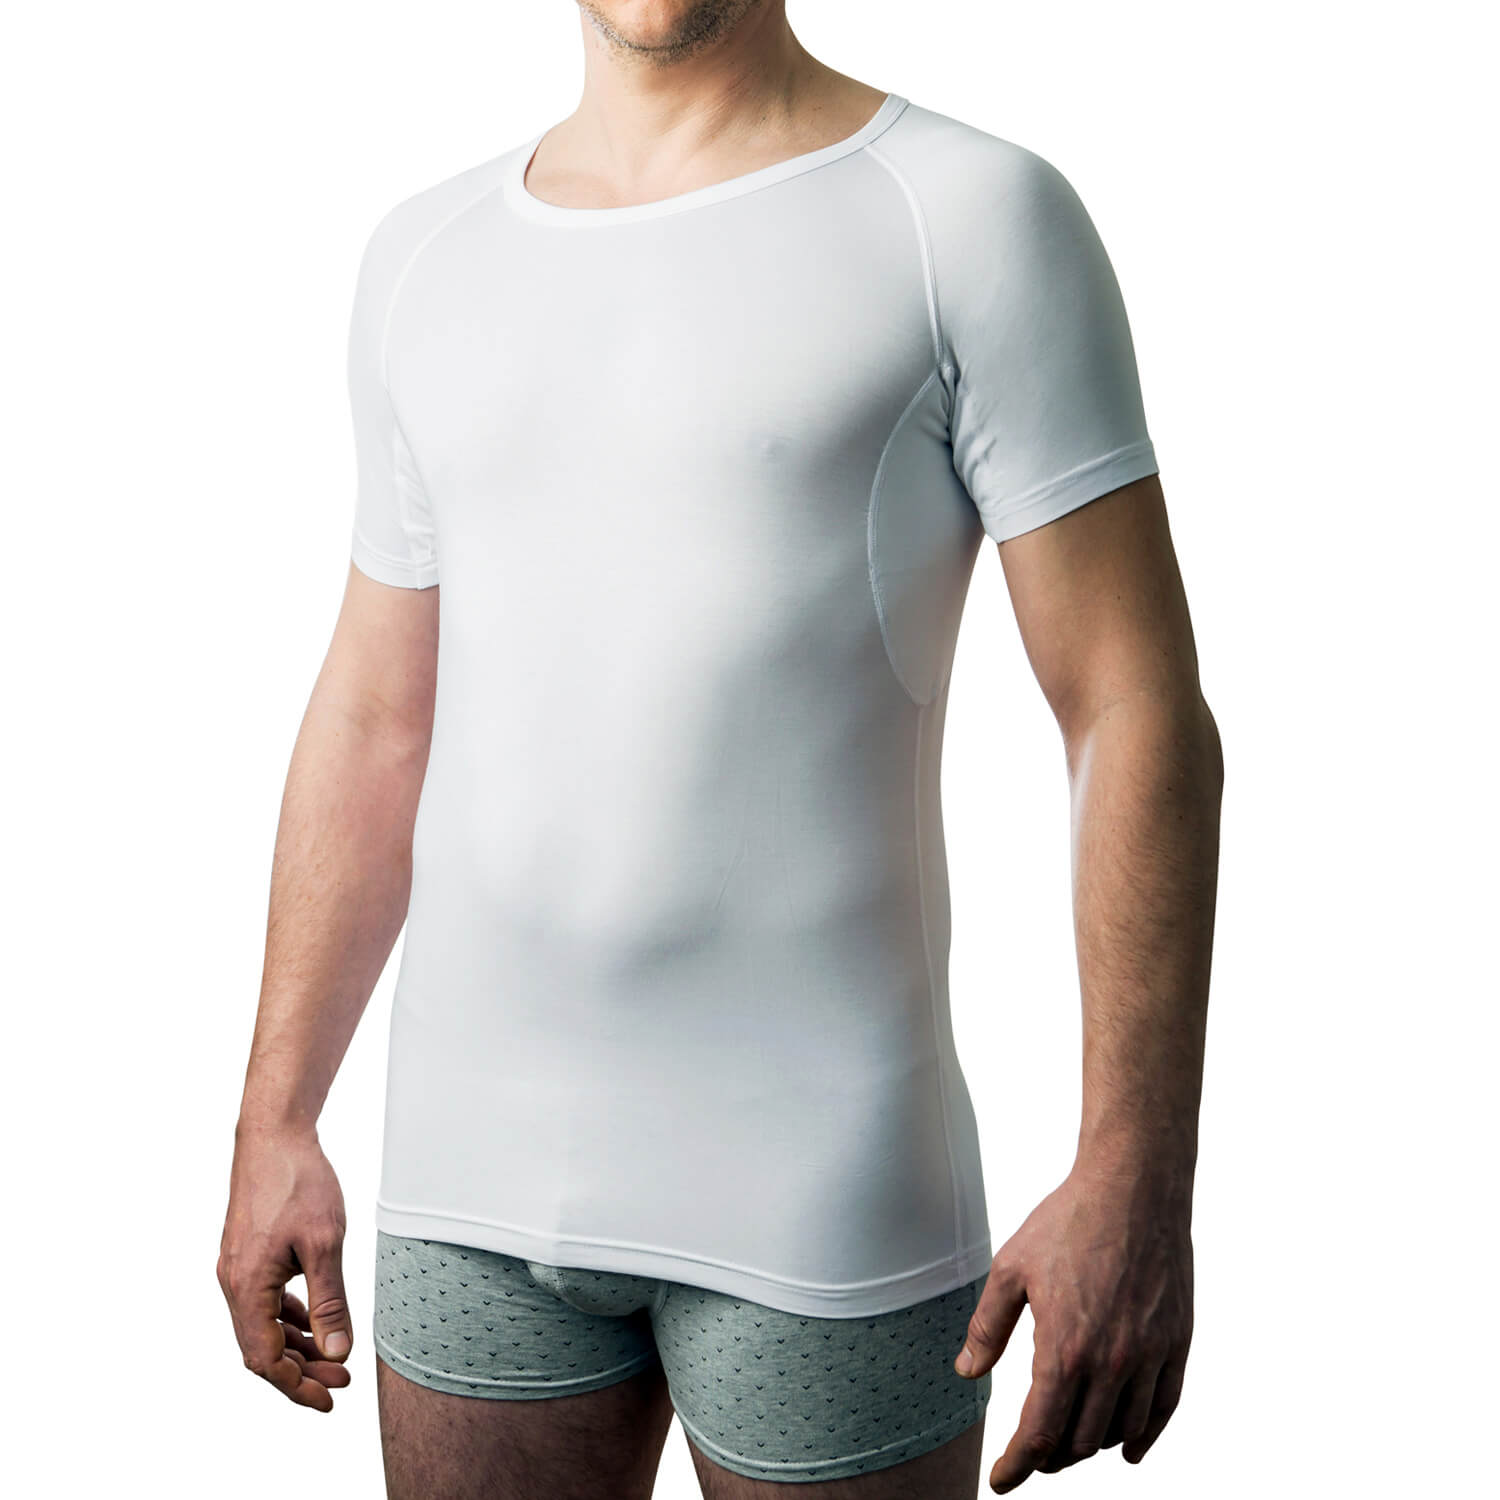 liner Giraf bande Buy DRYWEAR Sweatproof T-shirt for Men (C-neck, White)